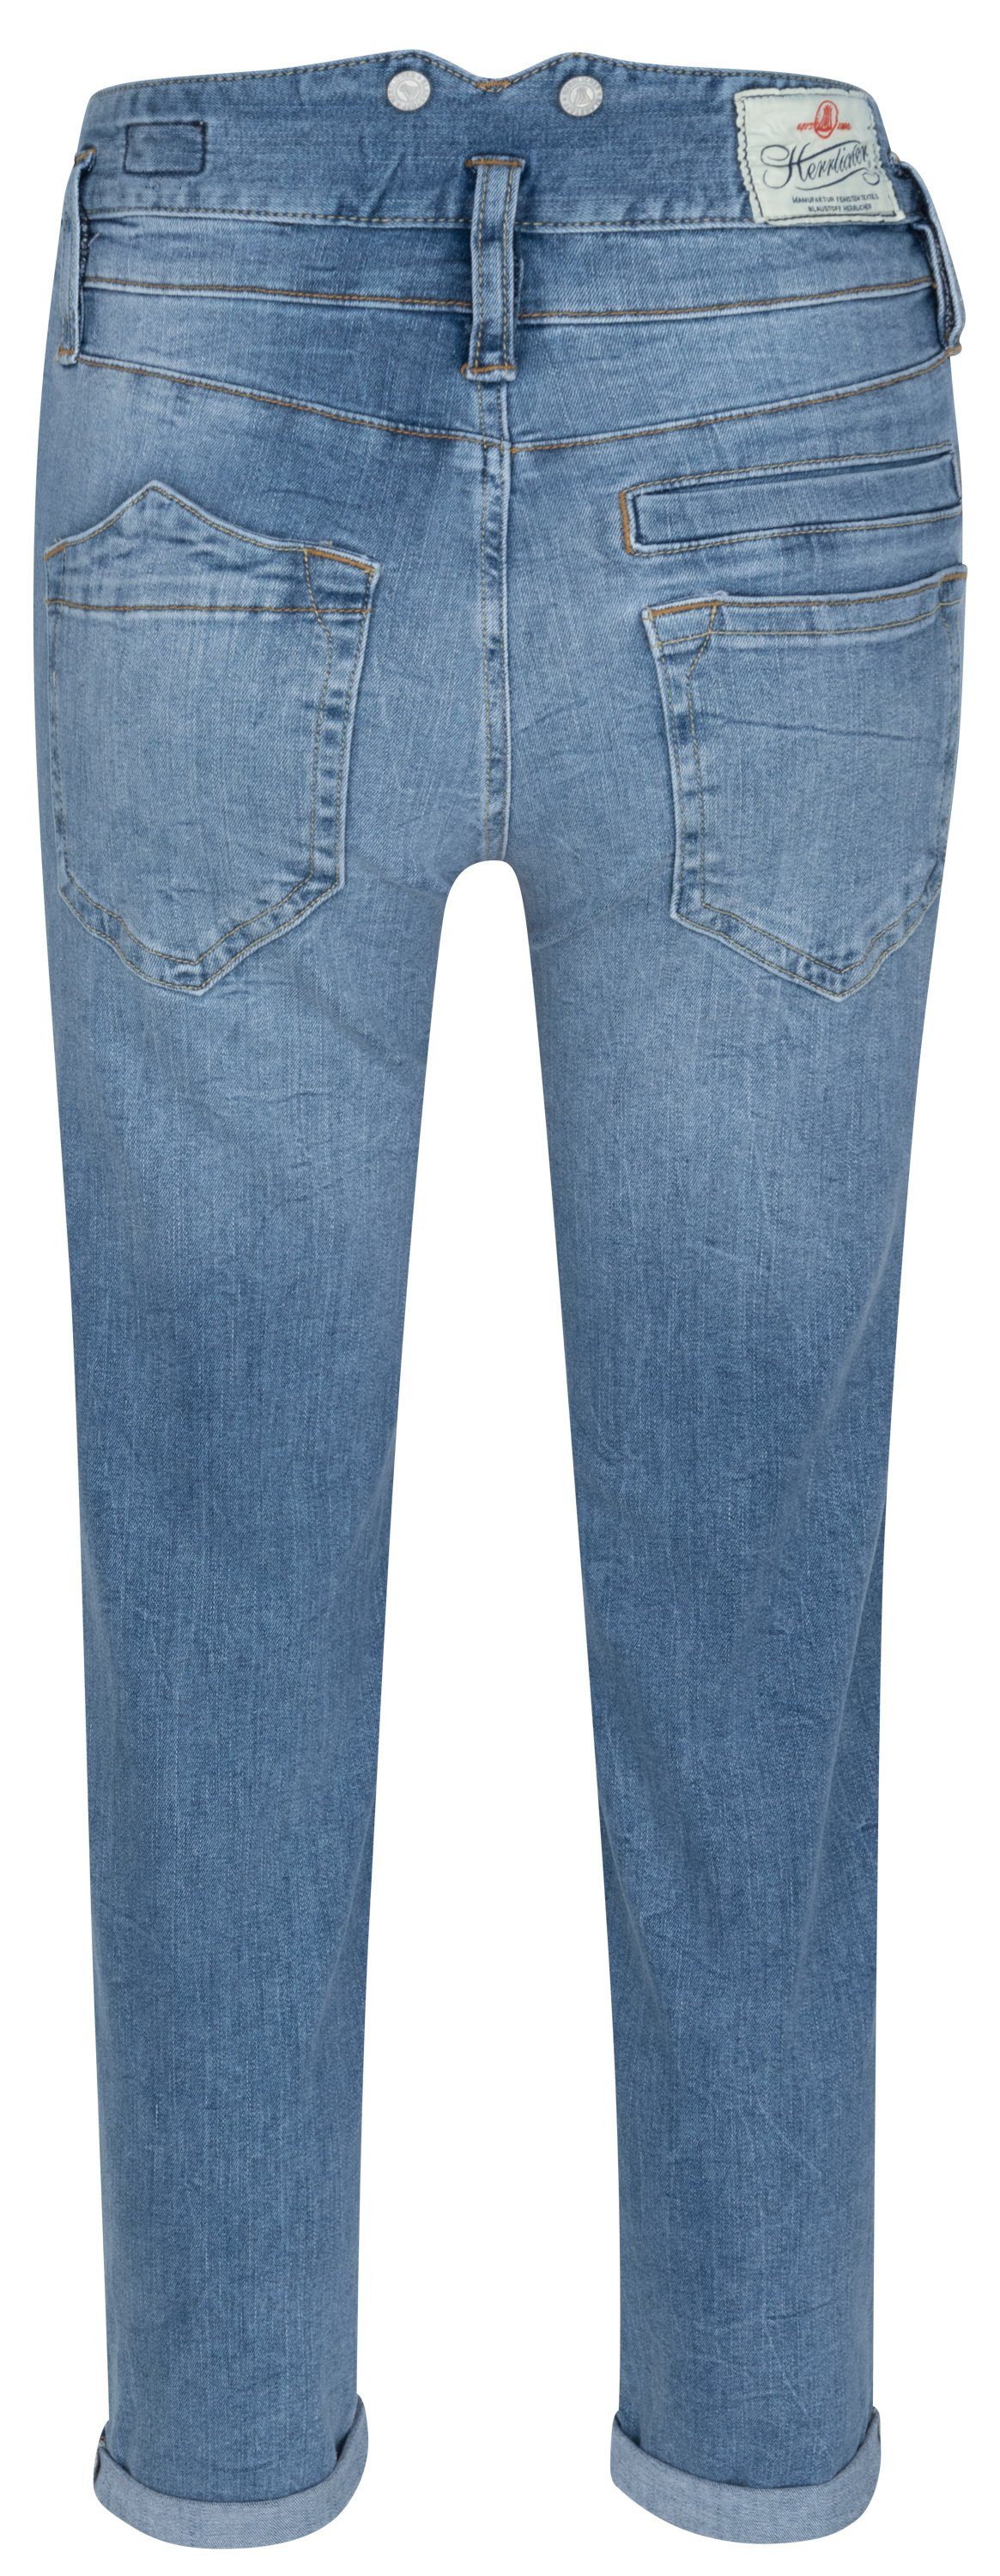 HERRLICHER Stretch-Jeans TAP Herrlicher PITCH HI blend 5564-OD445-076